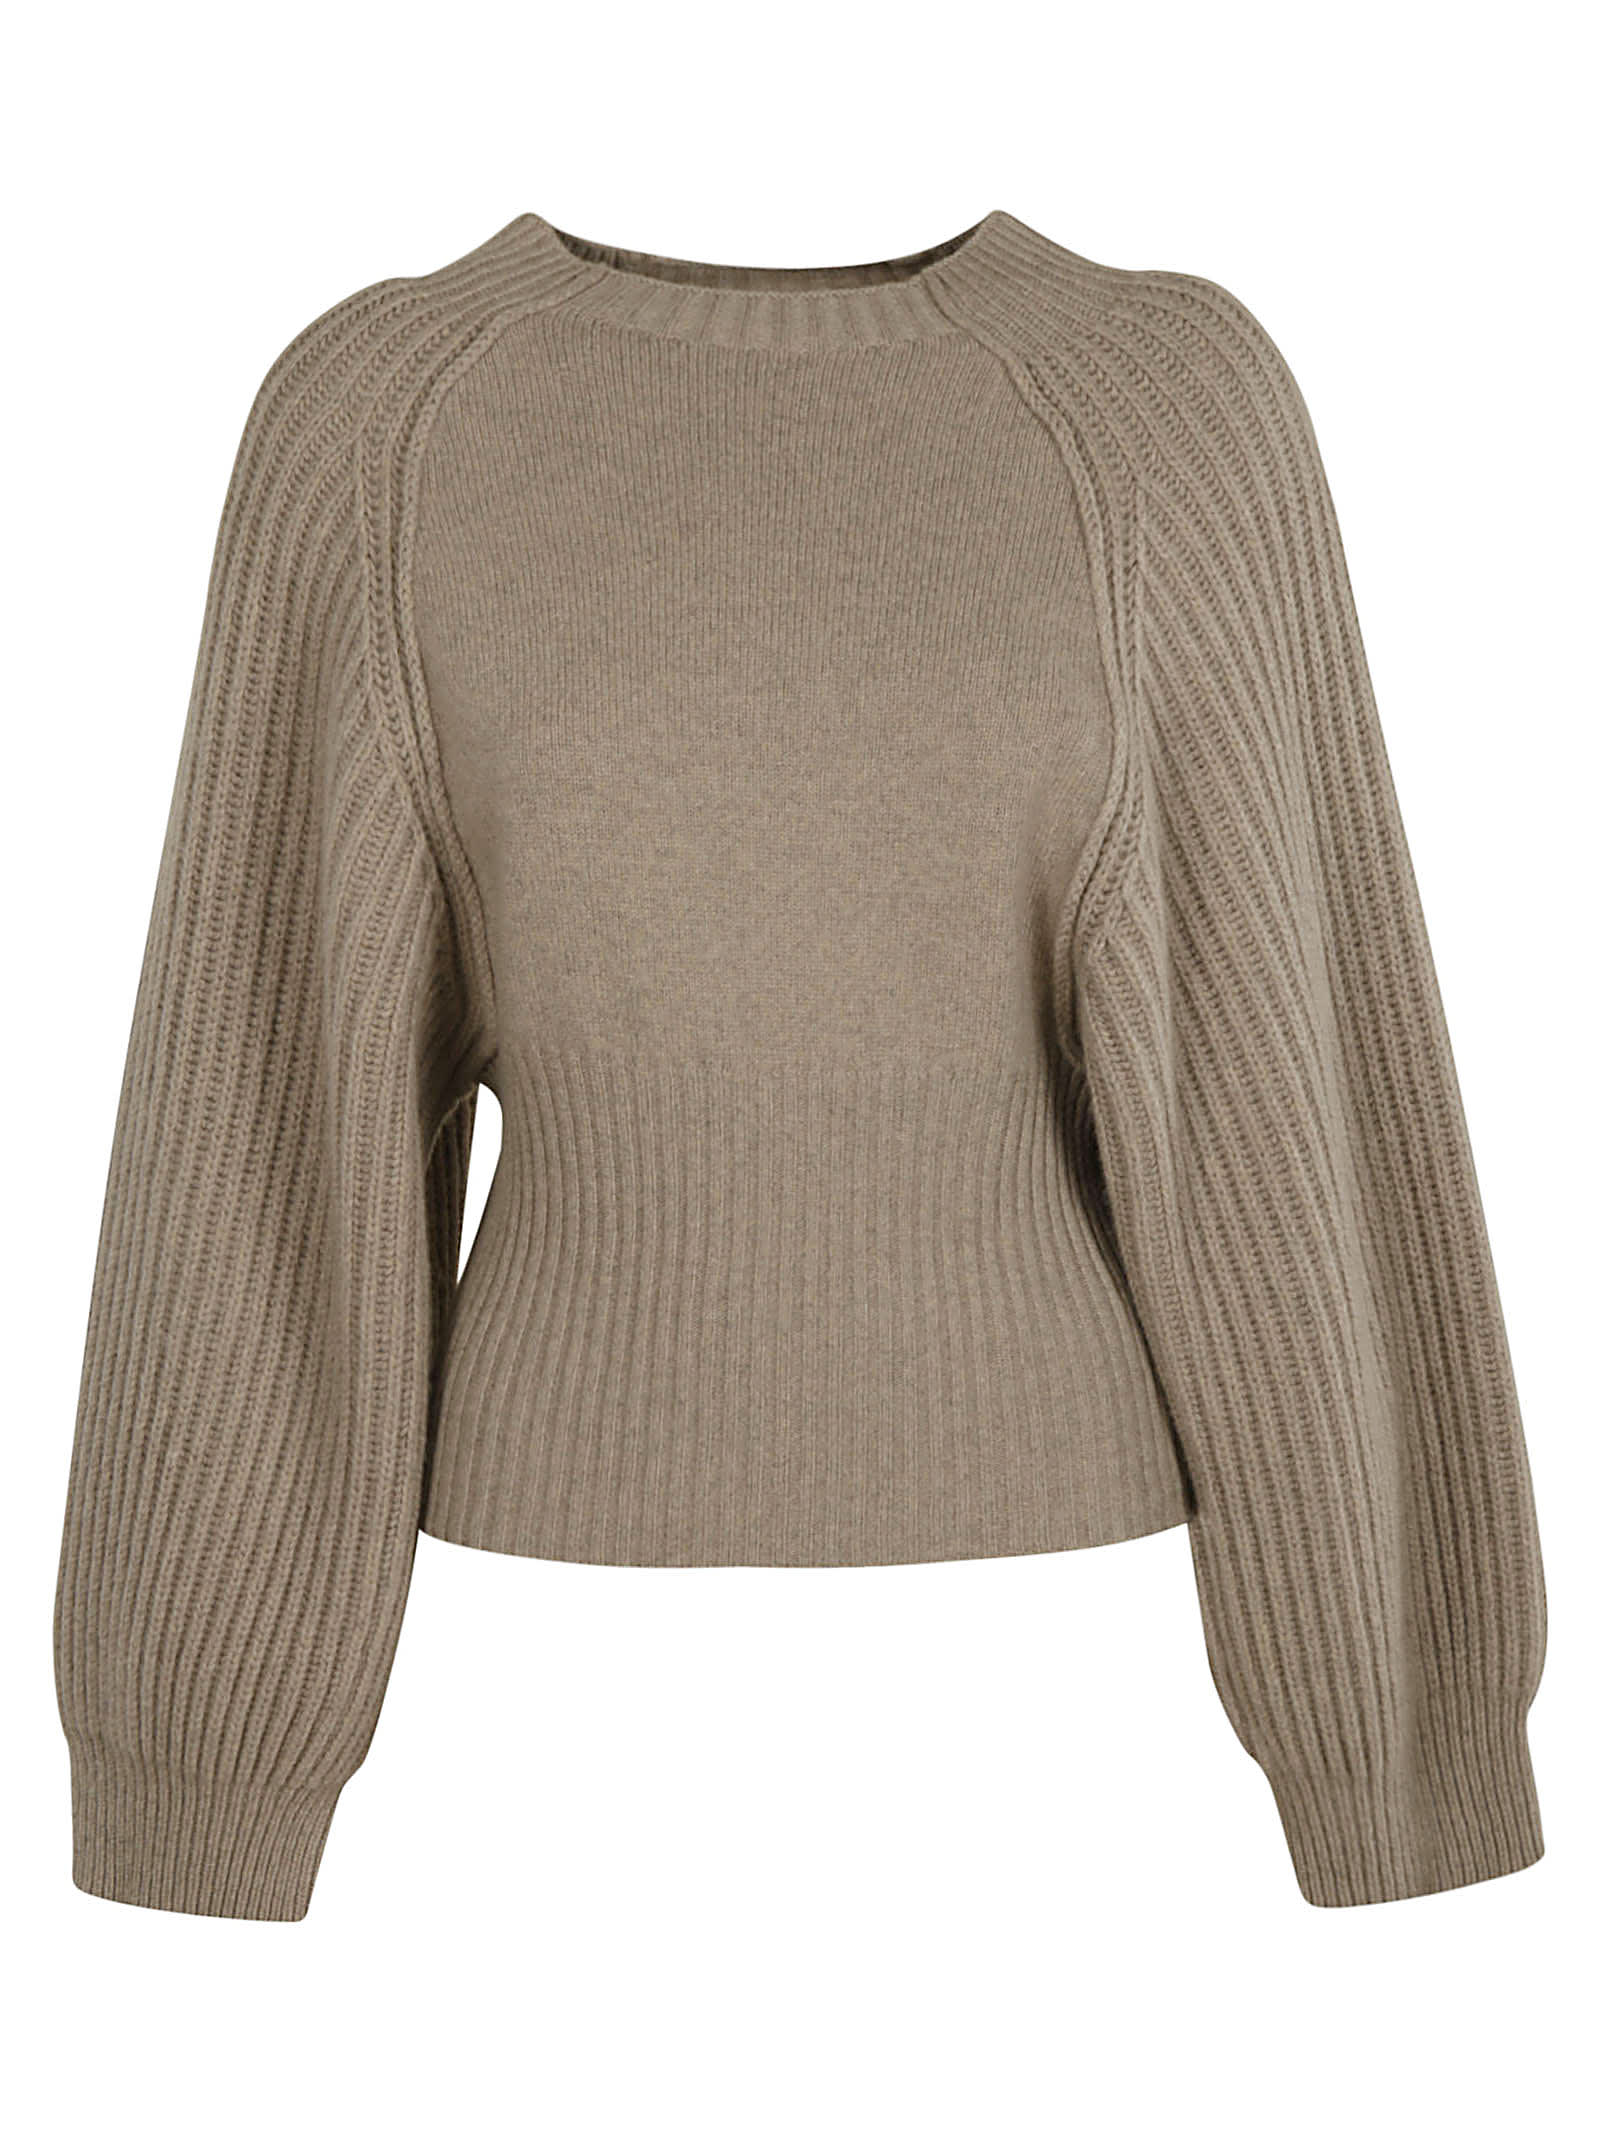 Stella McCartney Wide Sleeve Knit Sweater